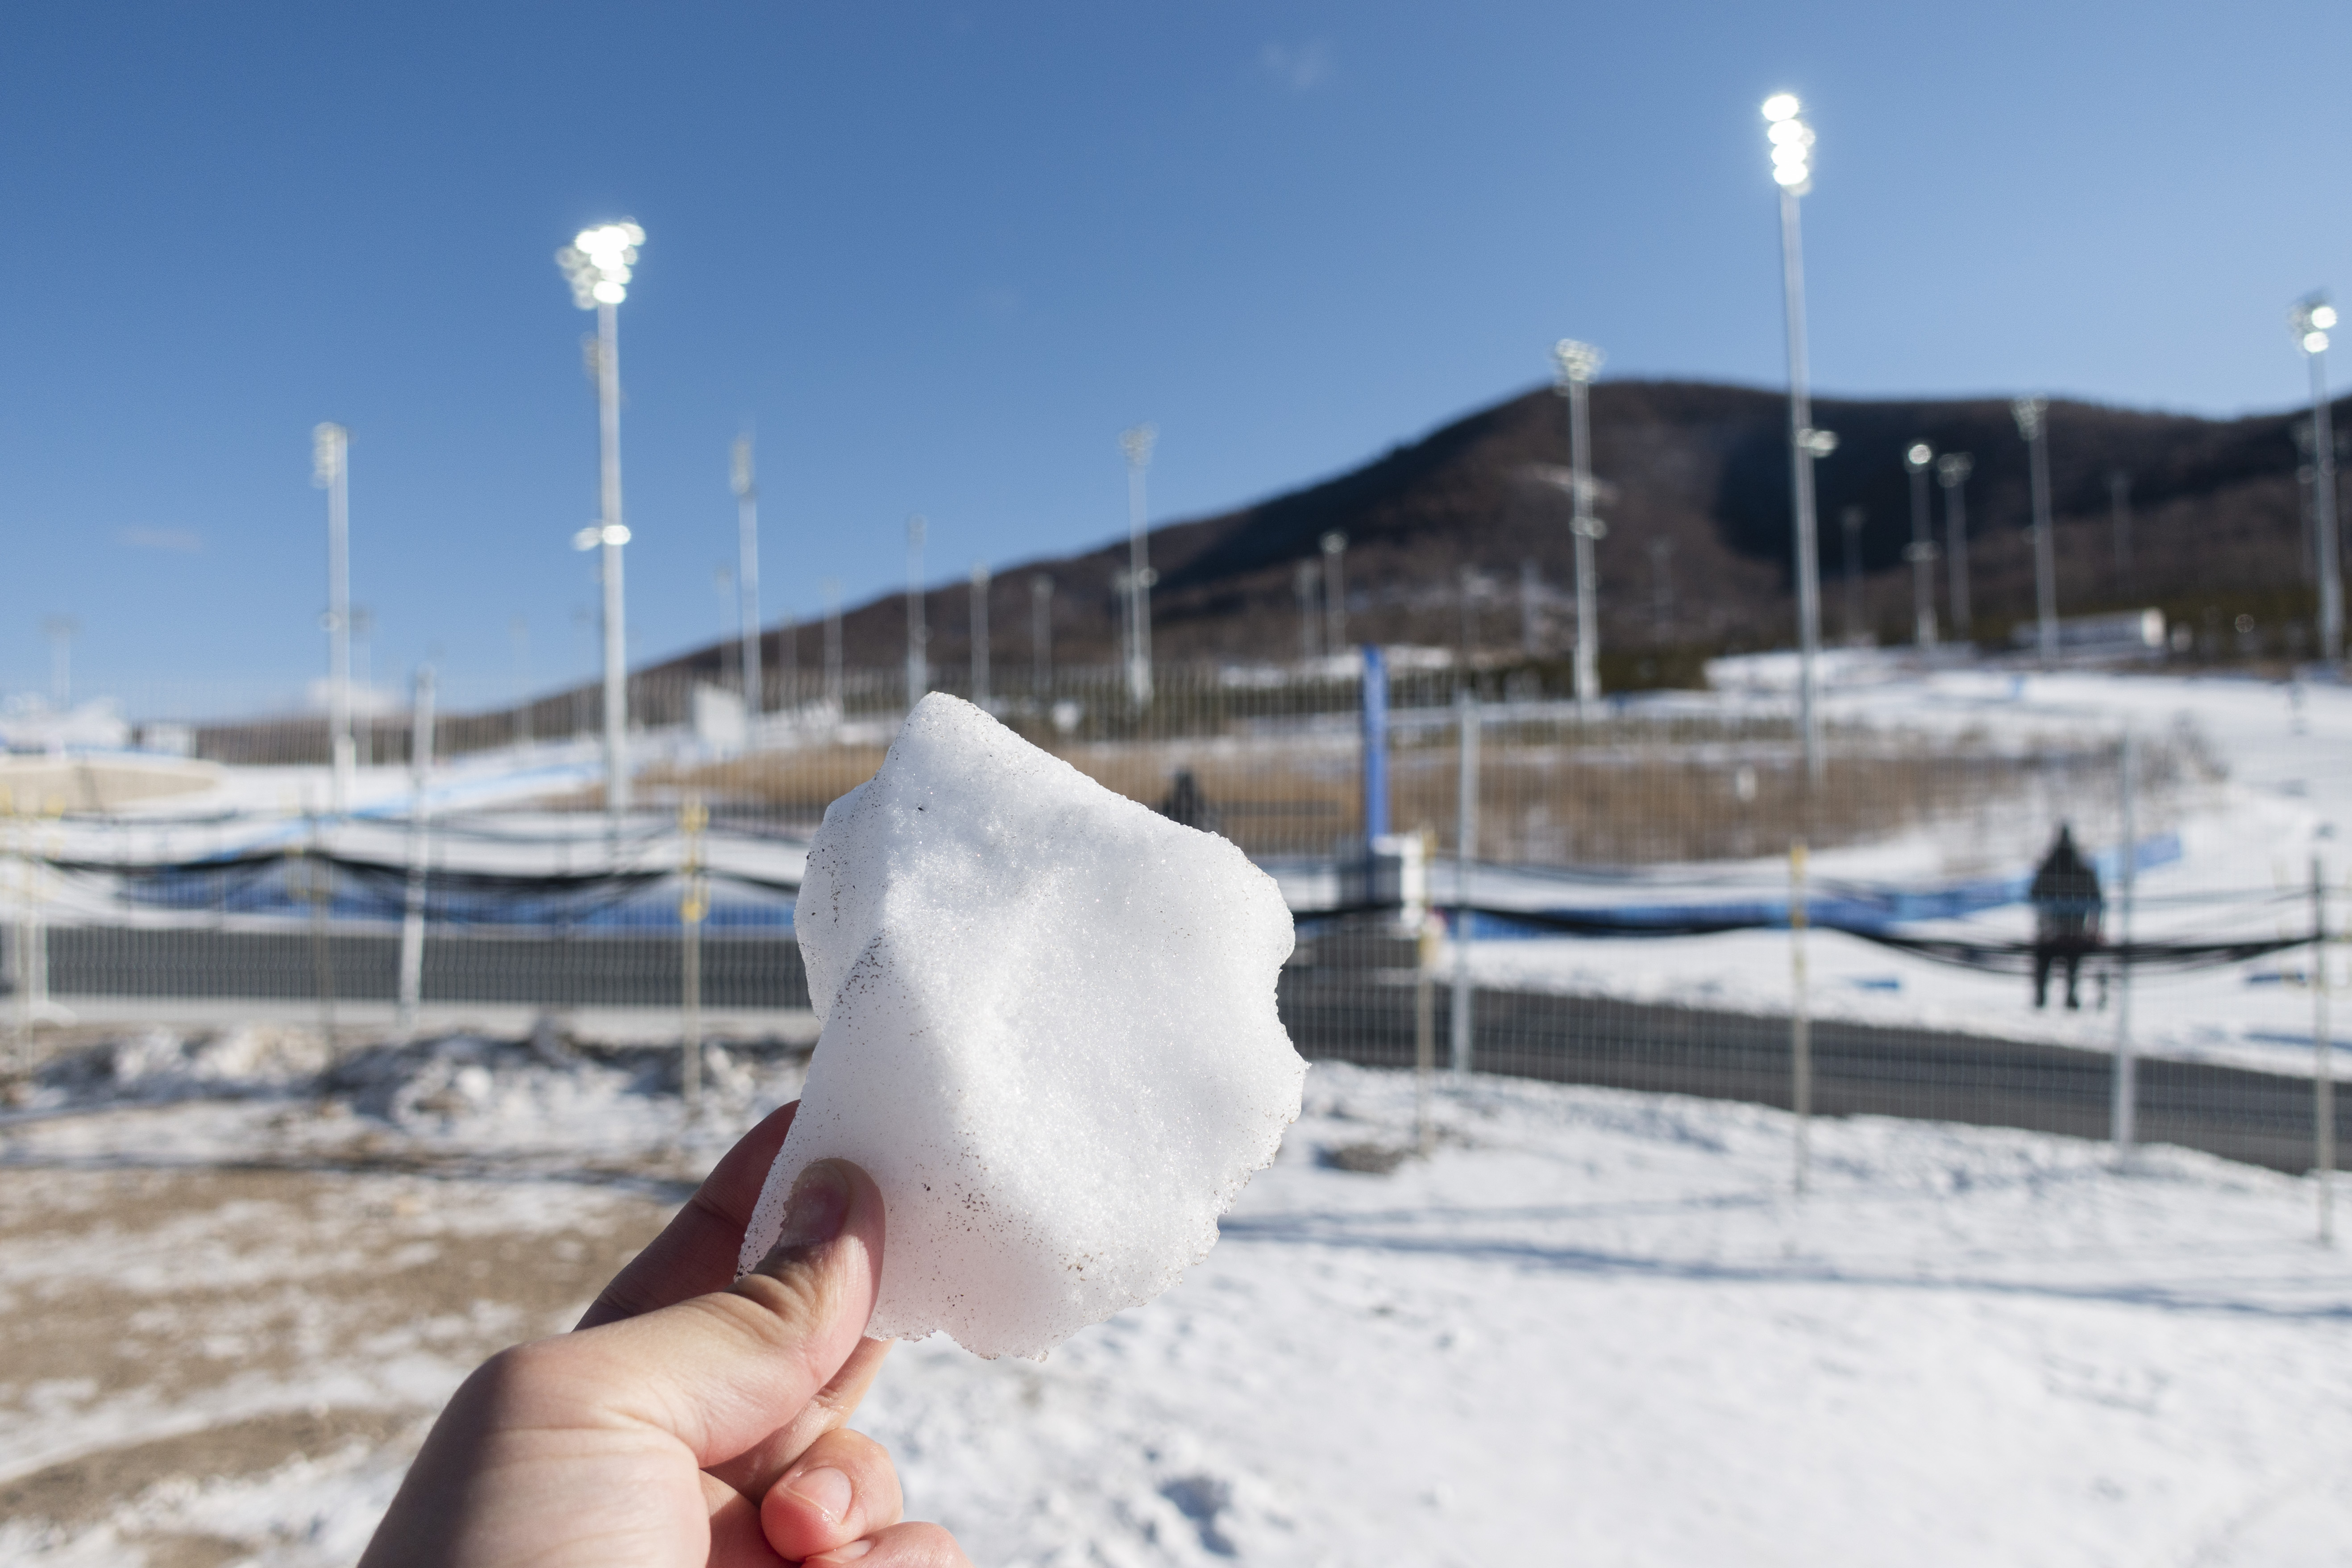 지난 5일 2022 베이징동계올림픽 크로스컨트리 경기장 옆에 인공눈이 얼음이 된 모습. 장자커우 류재민 기자